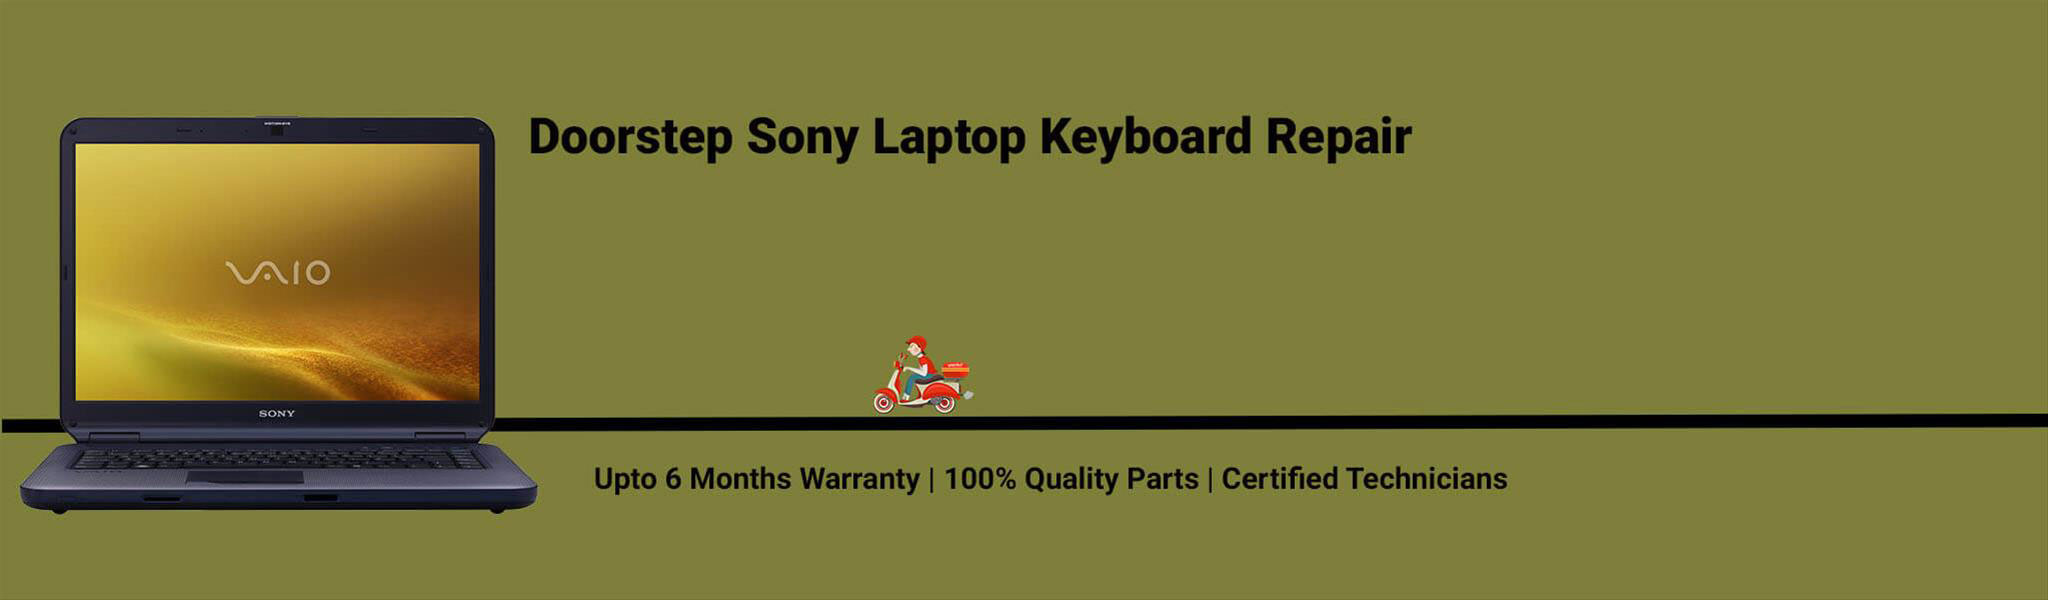 sony-laptop-keyboard-repair.jpg